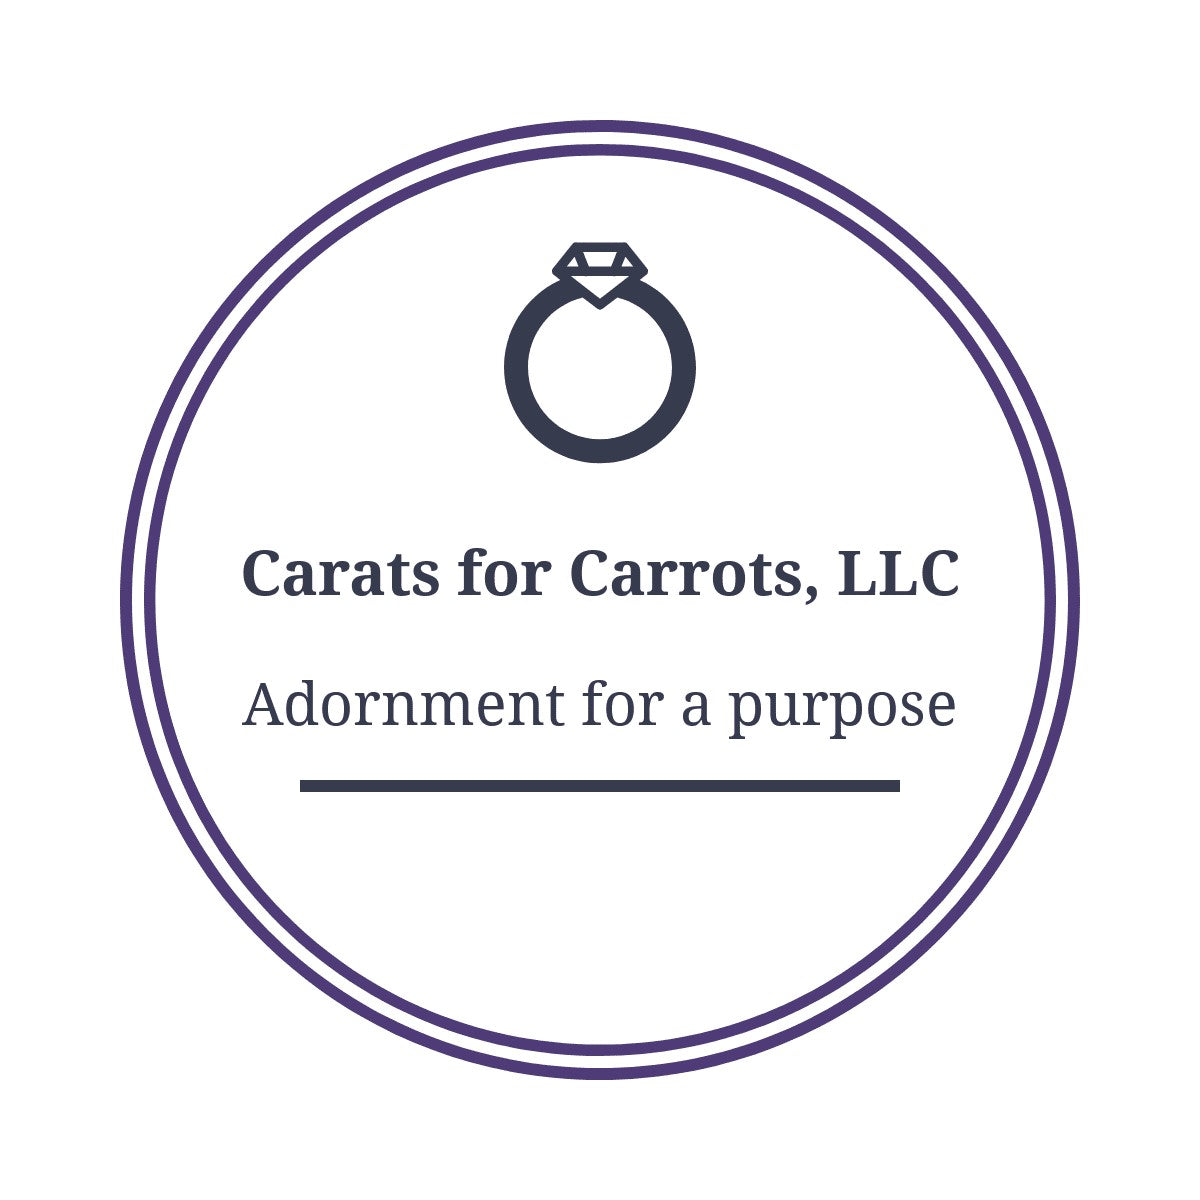 Carats for Carrots, LLC